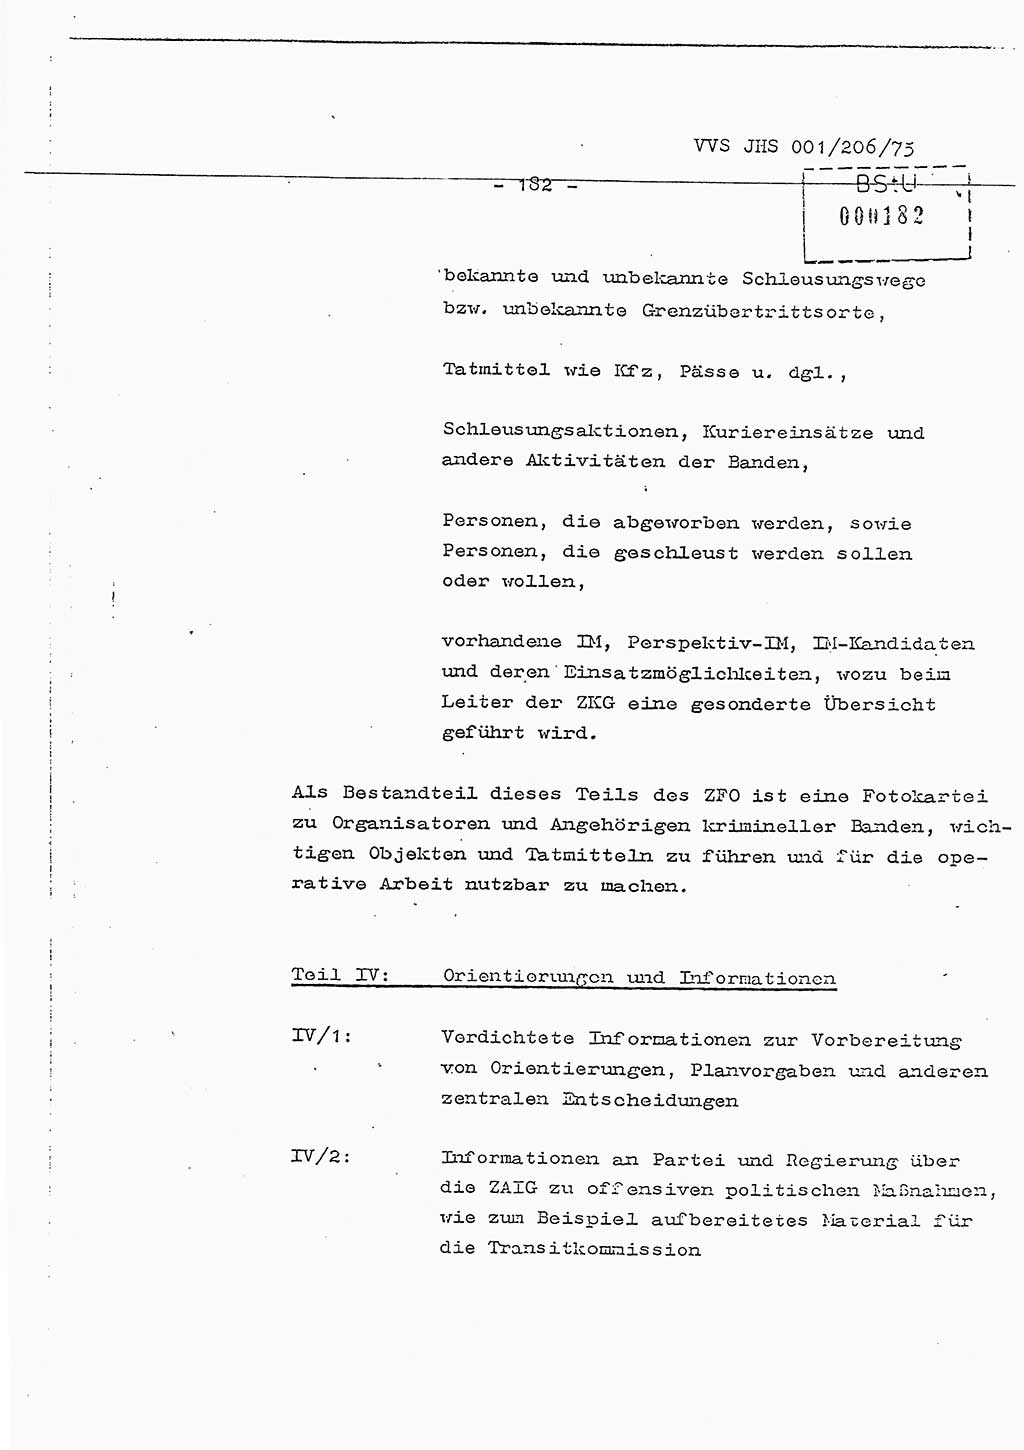 Dissertation Generalmajor Manfred Hummitzsch (Leiter der BV Leipzig), Generalmajor Heinz Fiedler (HA Ⅵ), Oberst Rolf Fister (HA Ⅸ), Ministerium für Staatssicherheit (MfS) [Deutsche Demokratische Republik (DDR)], Juristische Hochschule (JHS), Vertrauliche Verschlußsache (VVS) 001-206/75, Potsdam 1975, Seite 182 (Diss. MfS DDR JHS VVS 001-206/75 1975, S. 182)